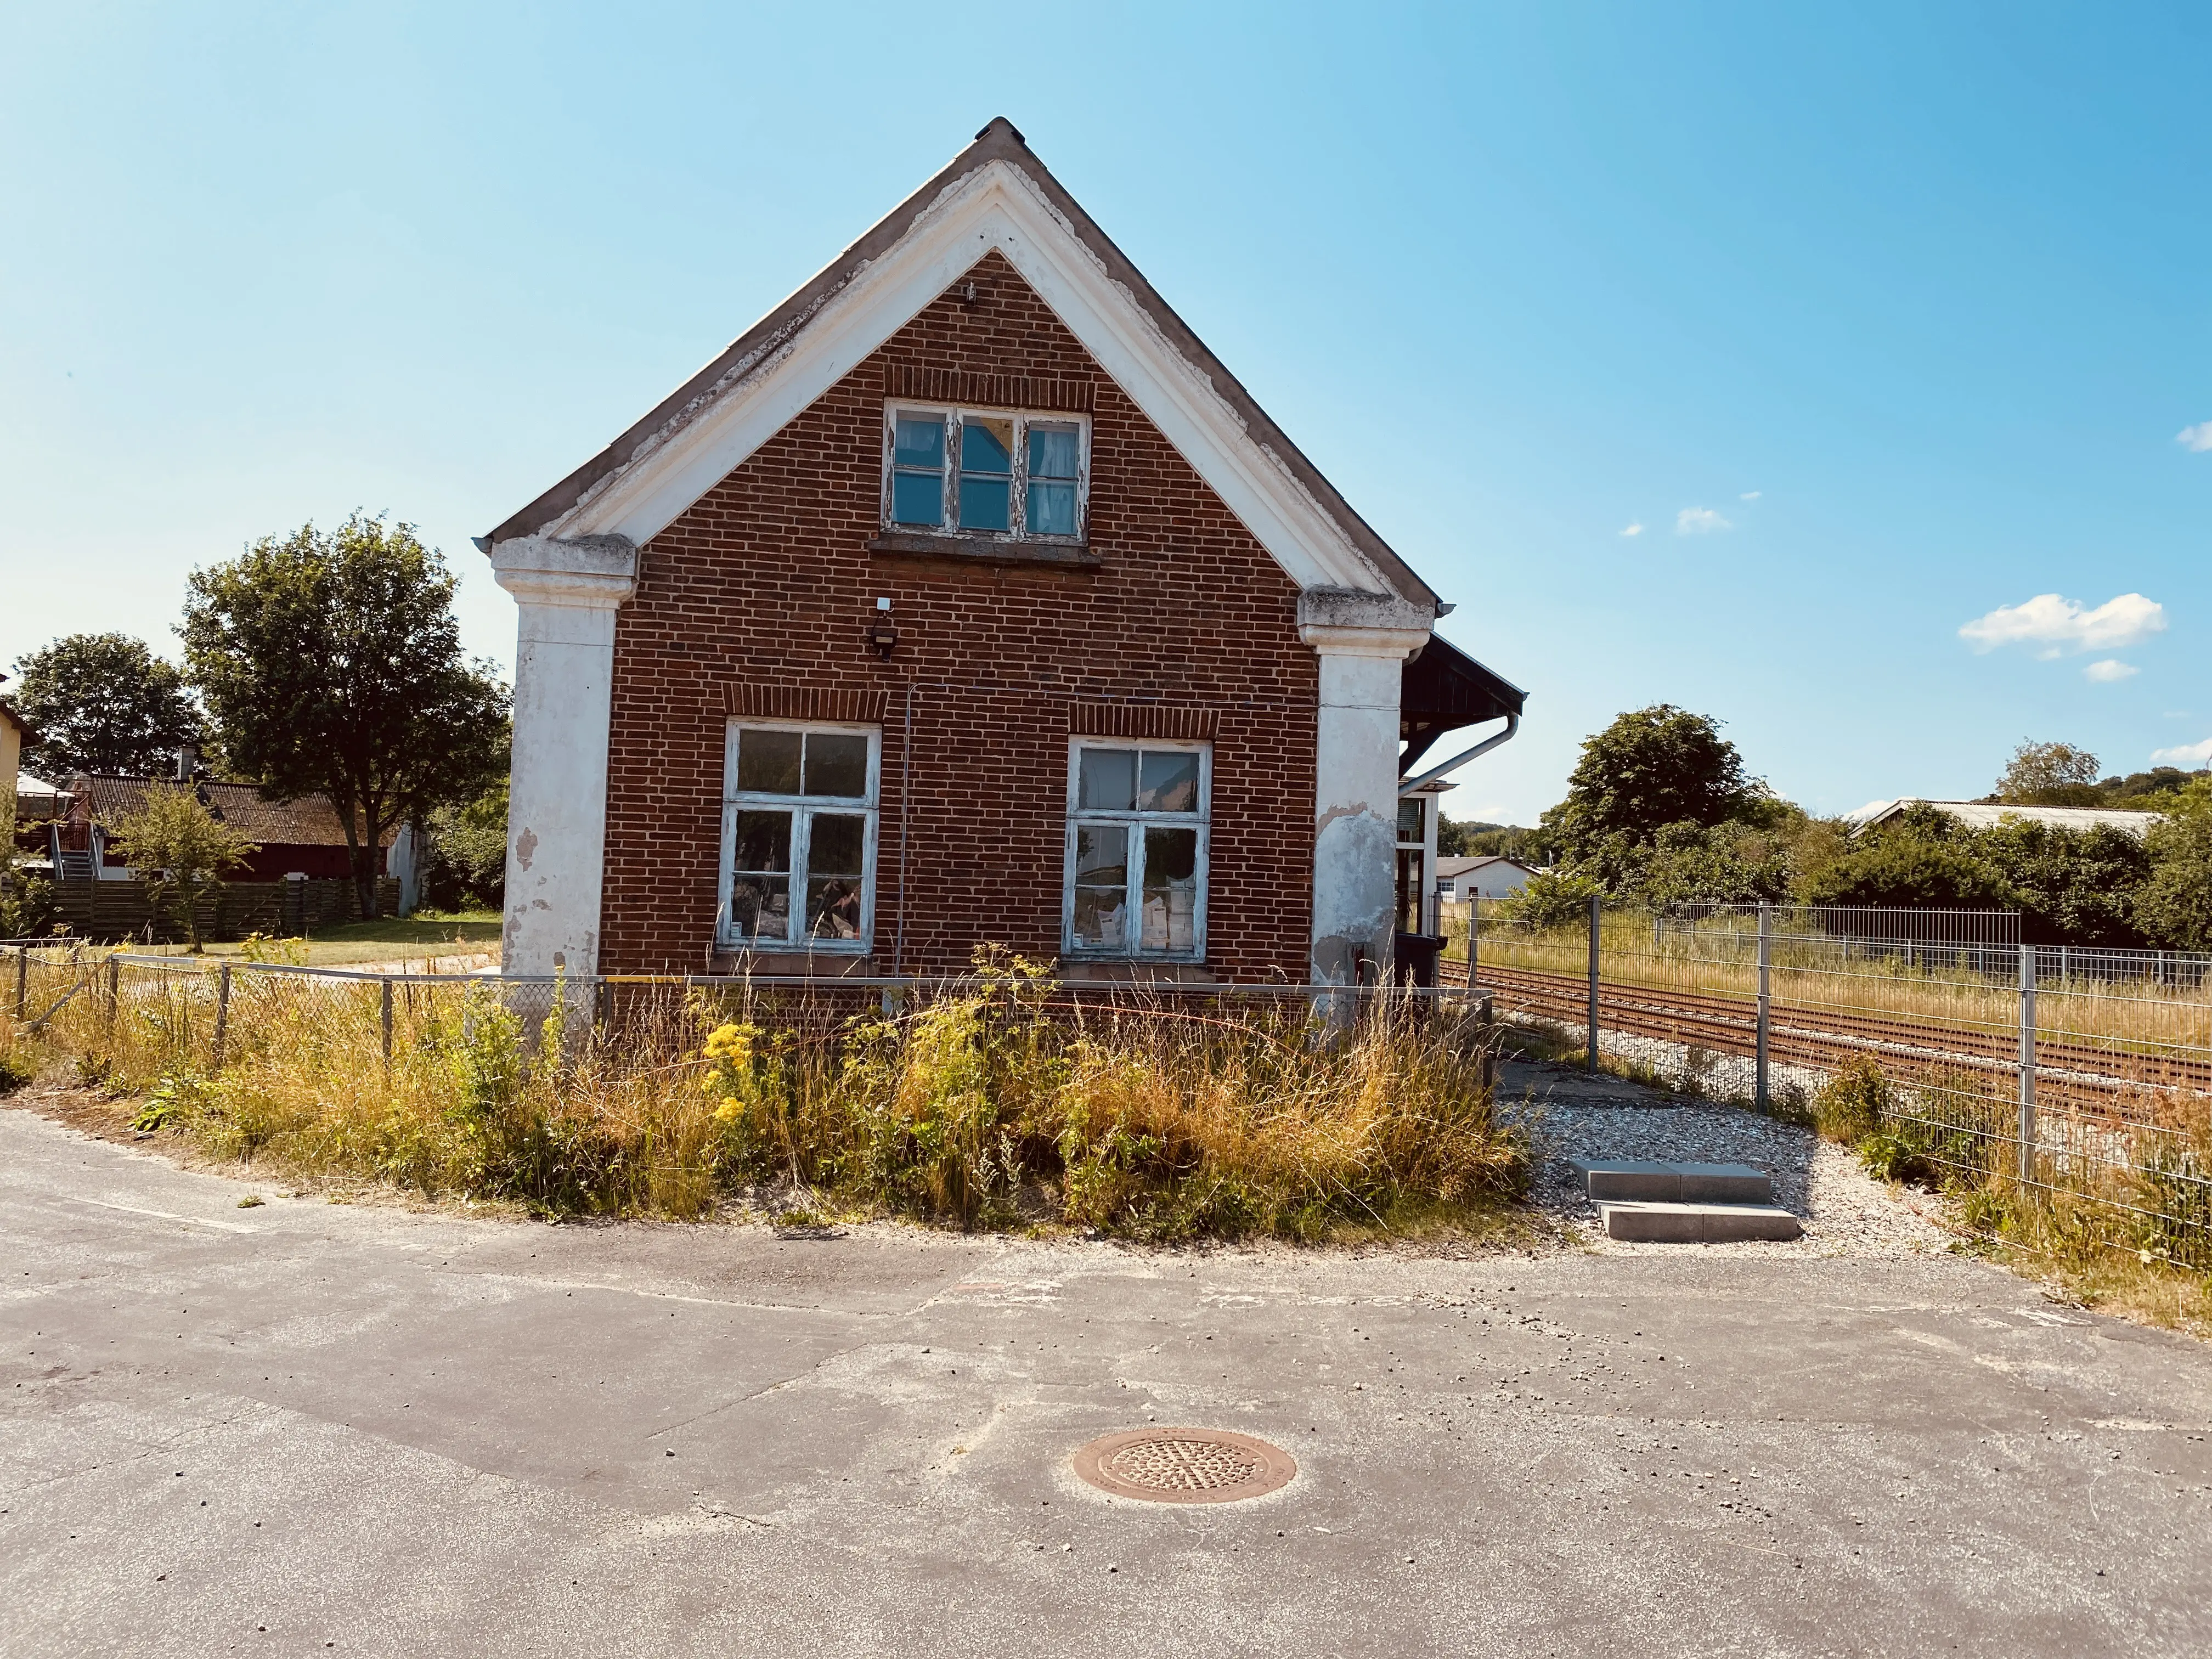 Billede af Ellidshøj Station.